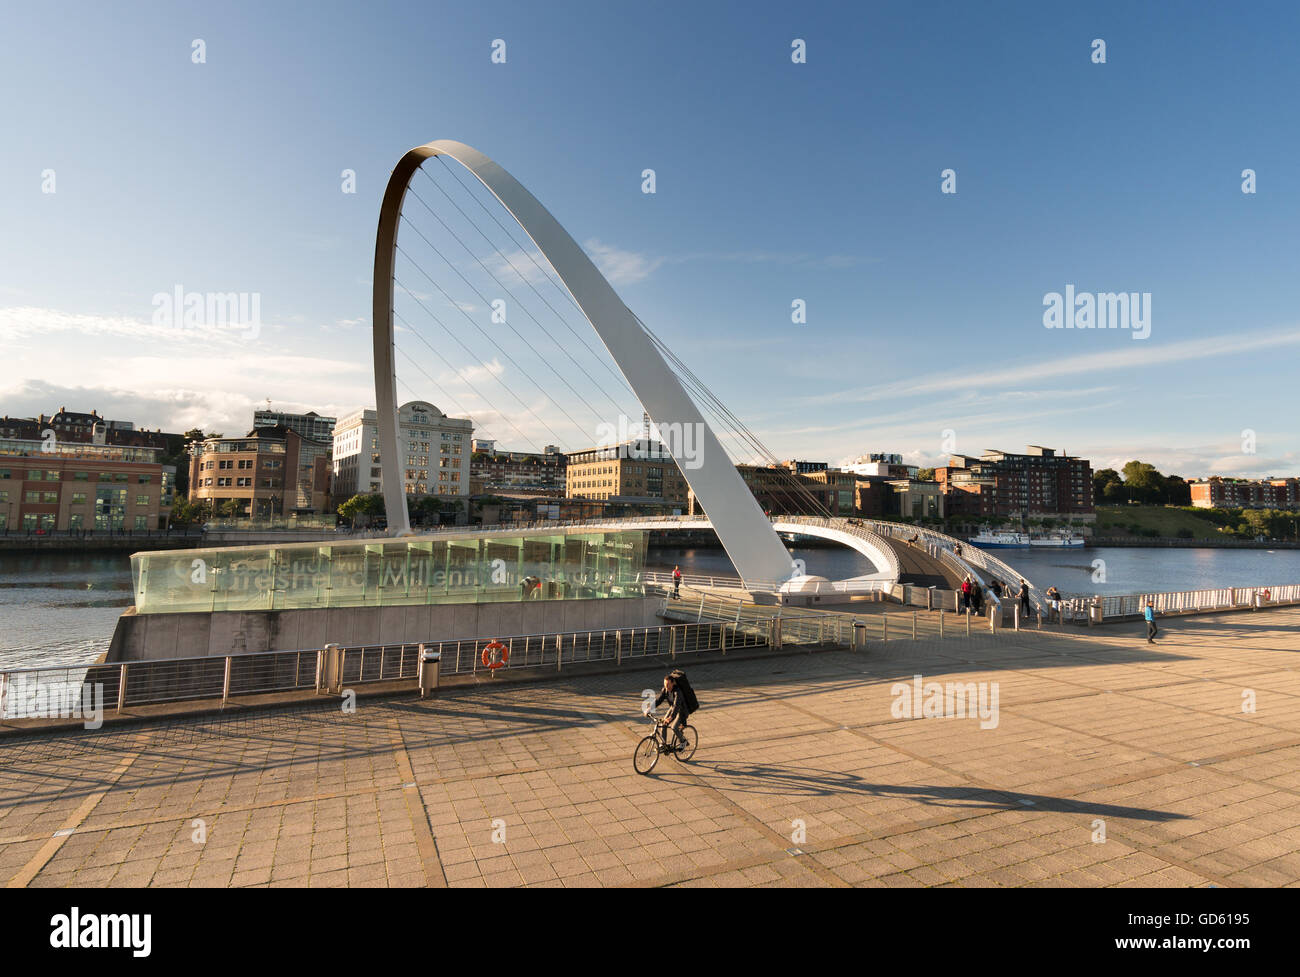 Un ciclista getta una lunga ombra come egli lascia a Gateshead Millennium Bridge sul fiume Tyne, Tyne and Wear, England, Regno Unito Foto Stock